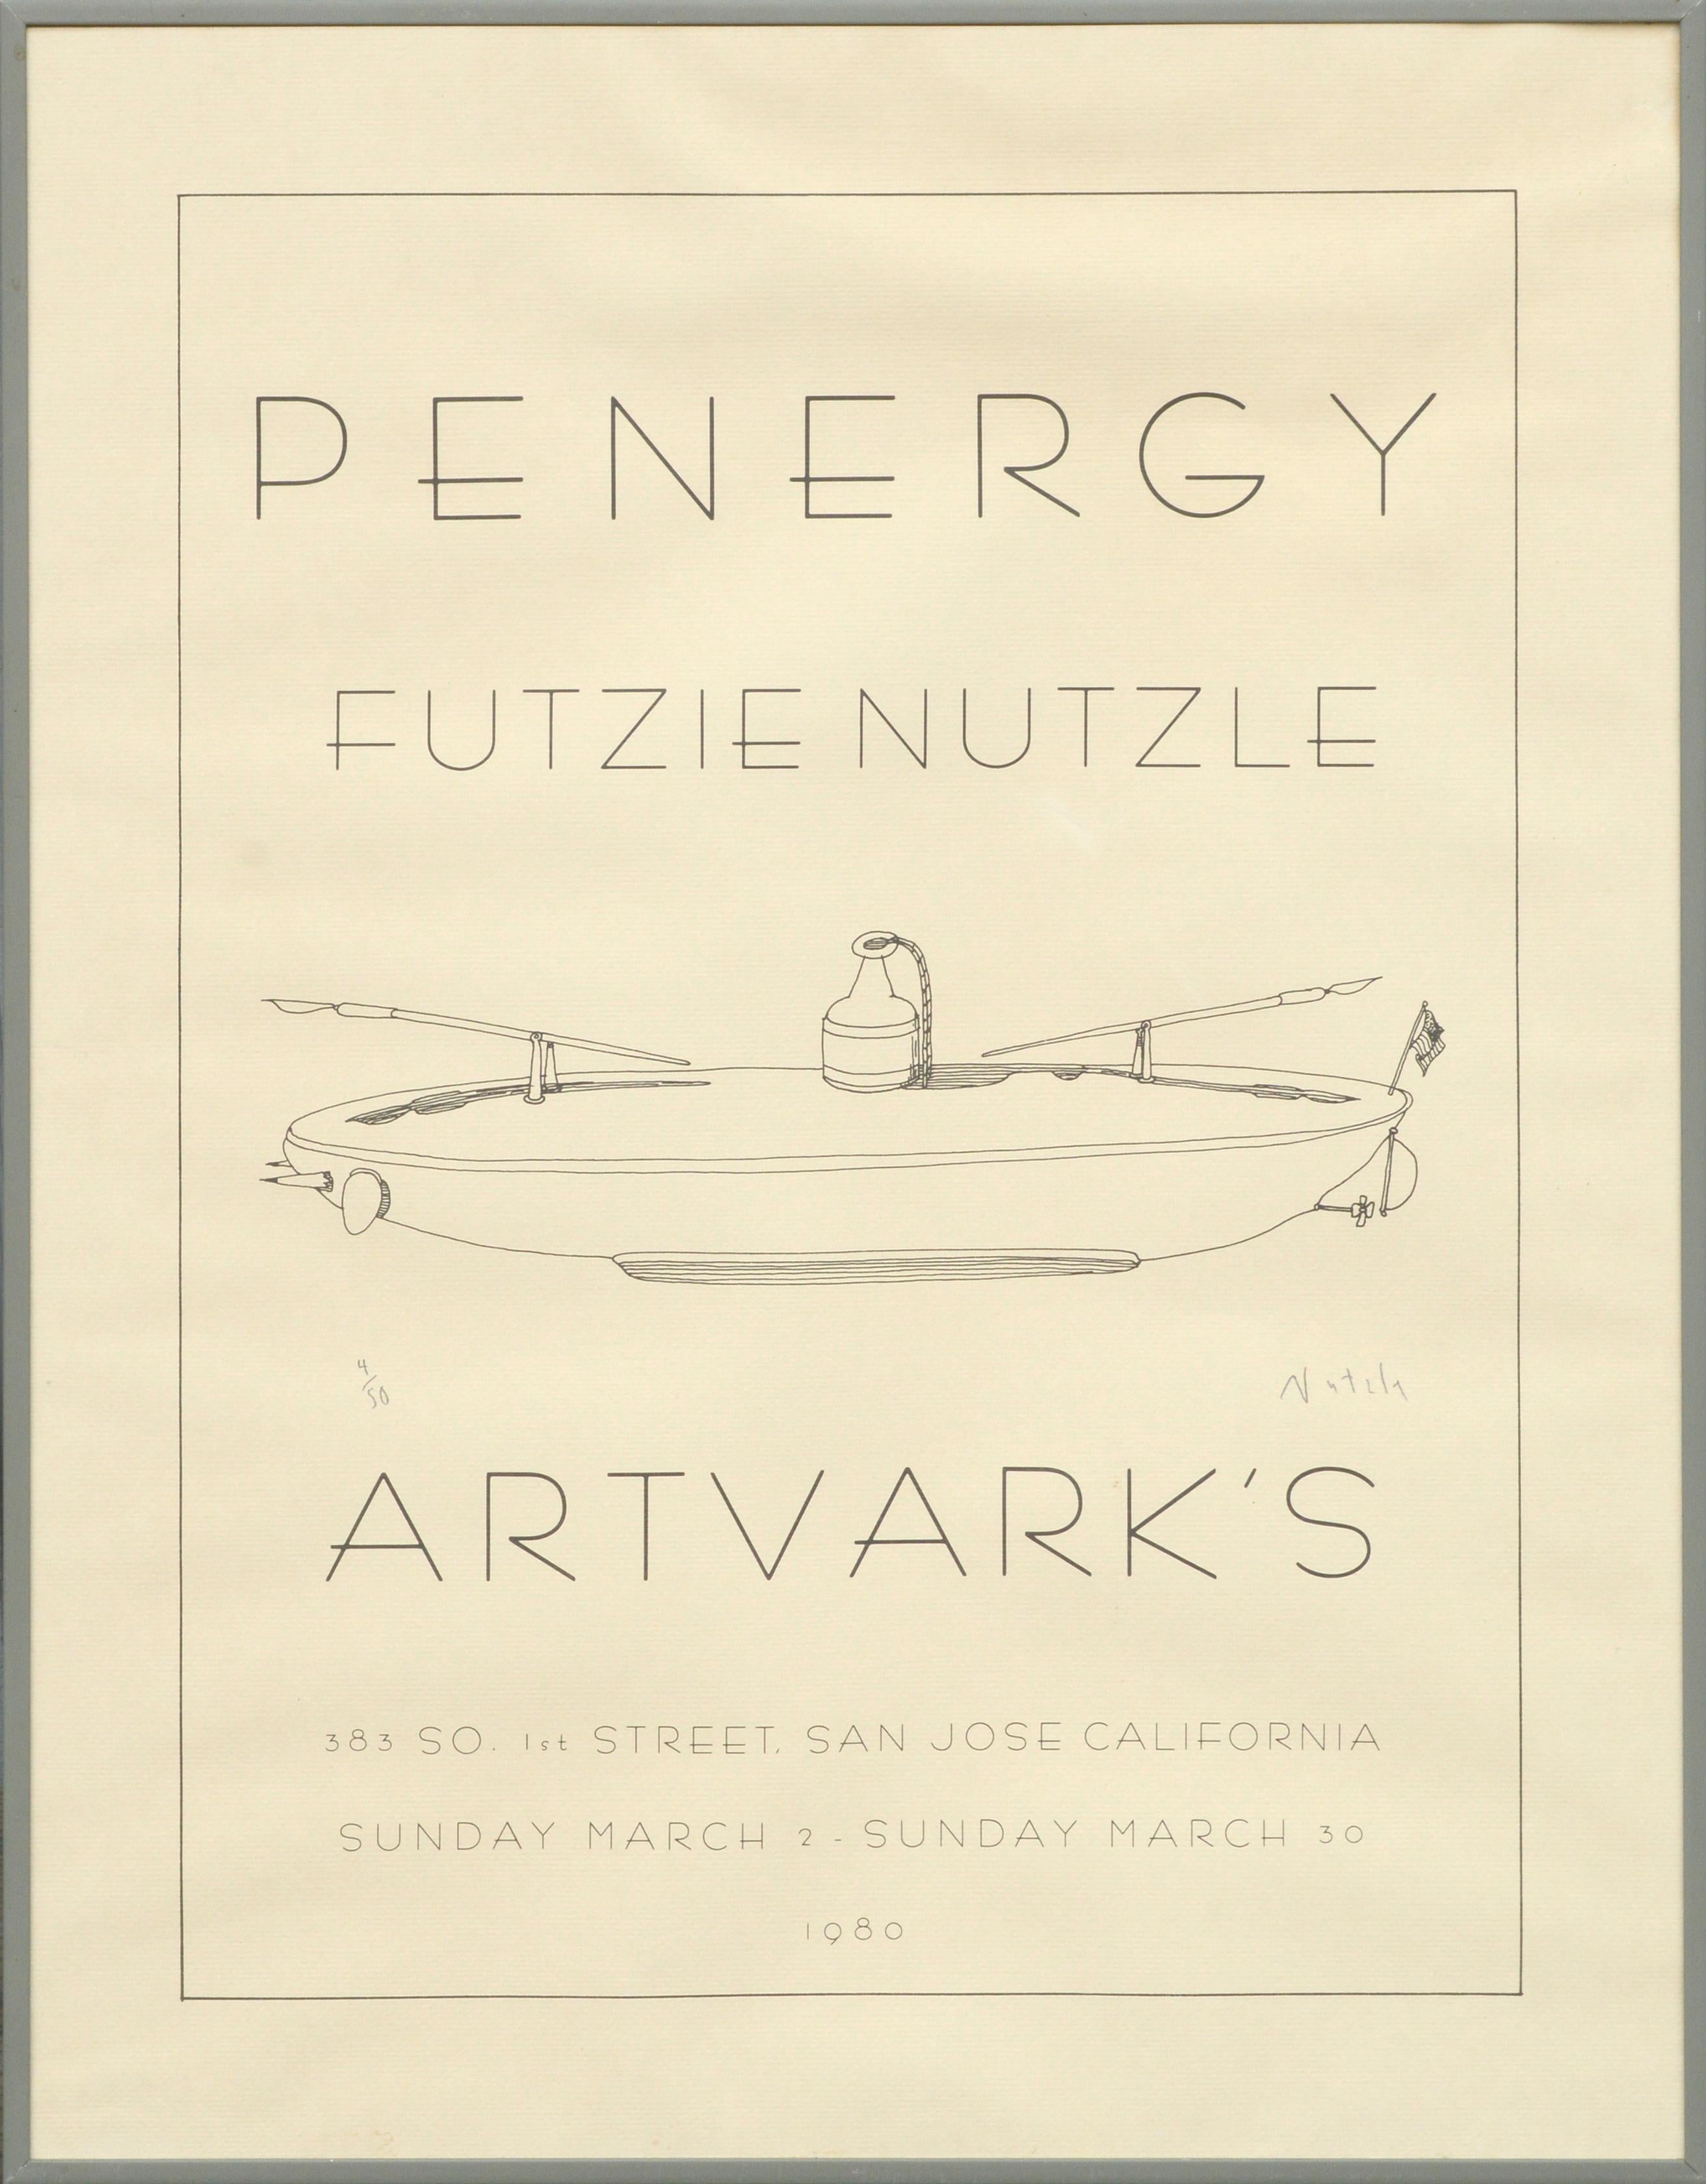 Futzie Nutzle Print – "Penergy" signiertes und nummeriertes Show-Poster